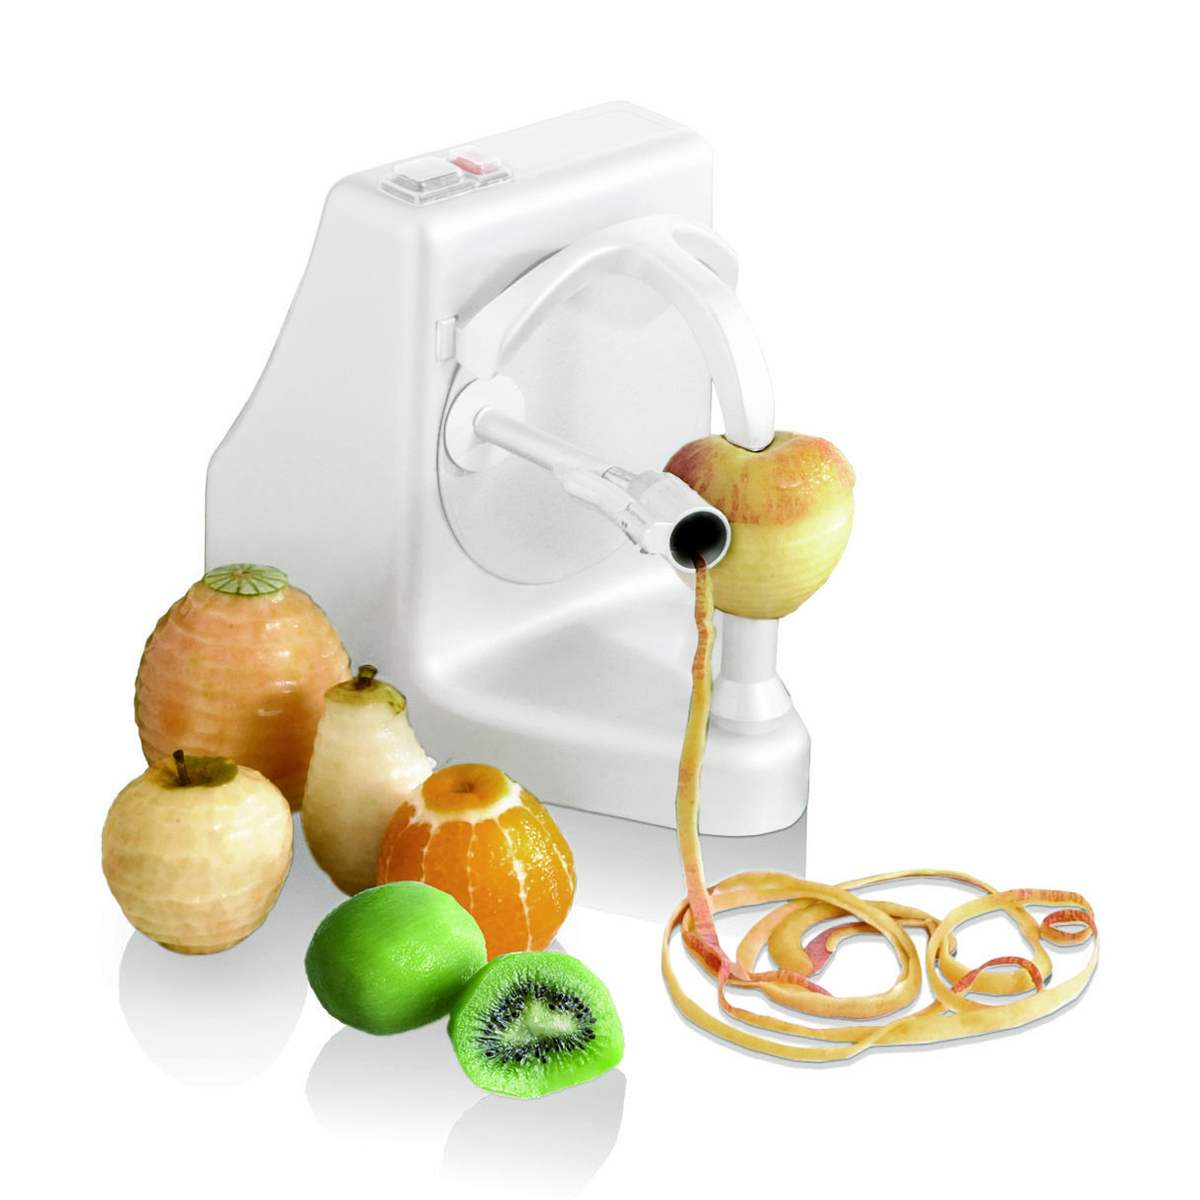 Eplucheur électrique semi-professionnel pour agrumes, oignons, fruits et légumes ronds